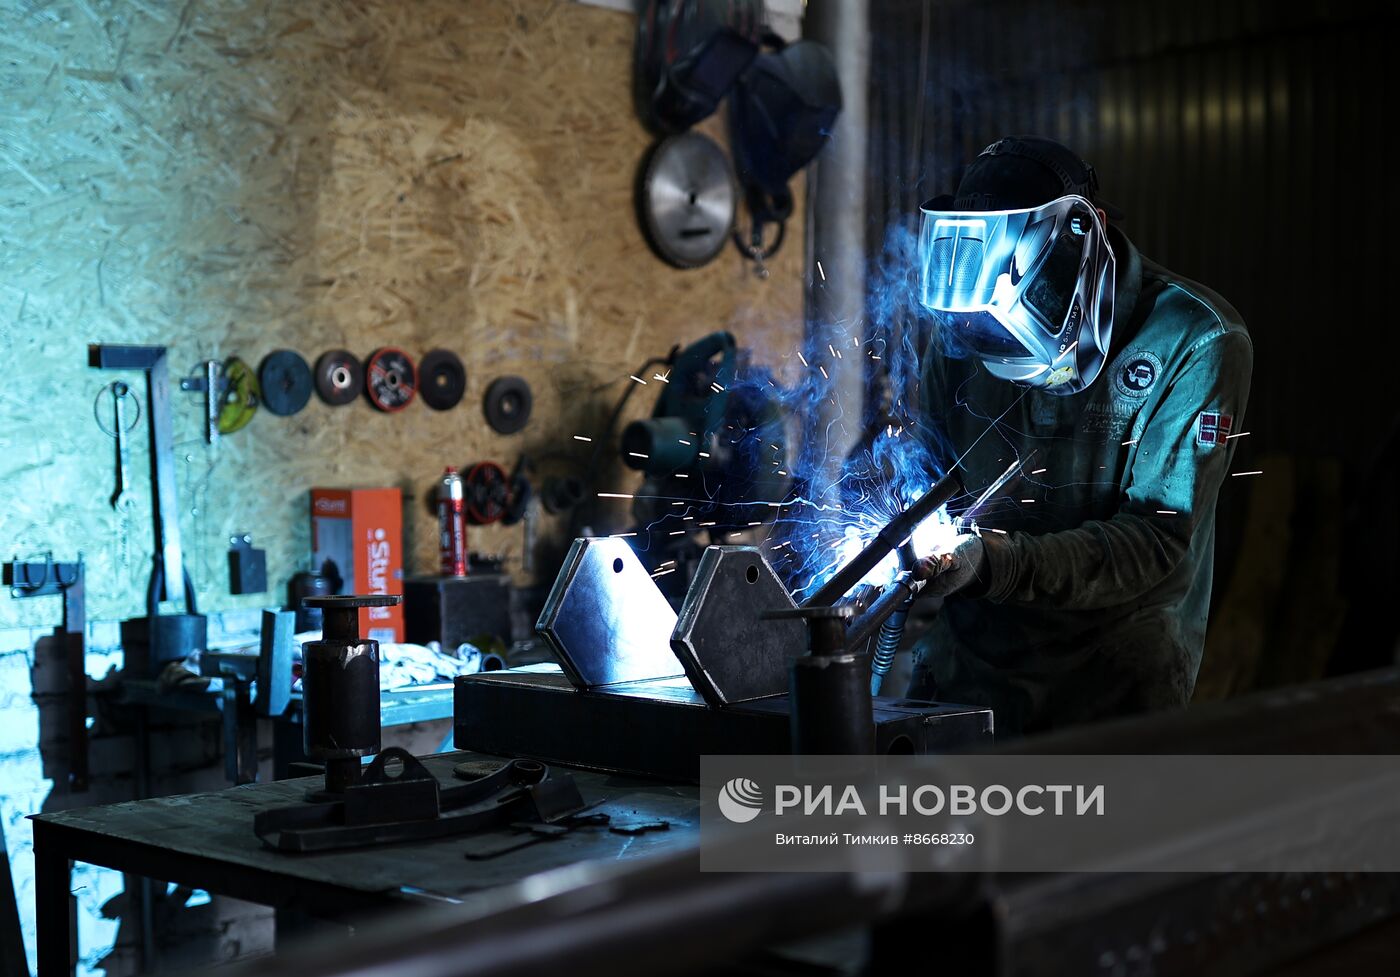 Работа мастерской "Машины Победы" в Краснодаре